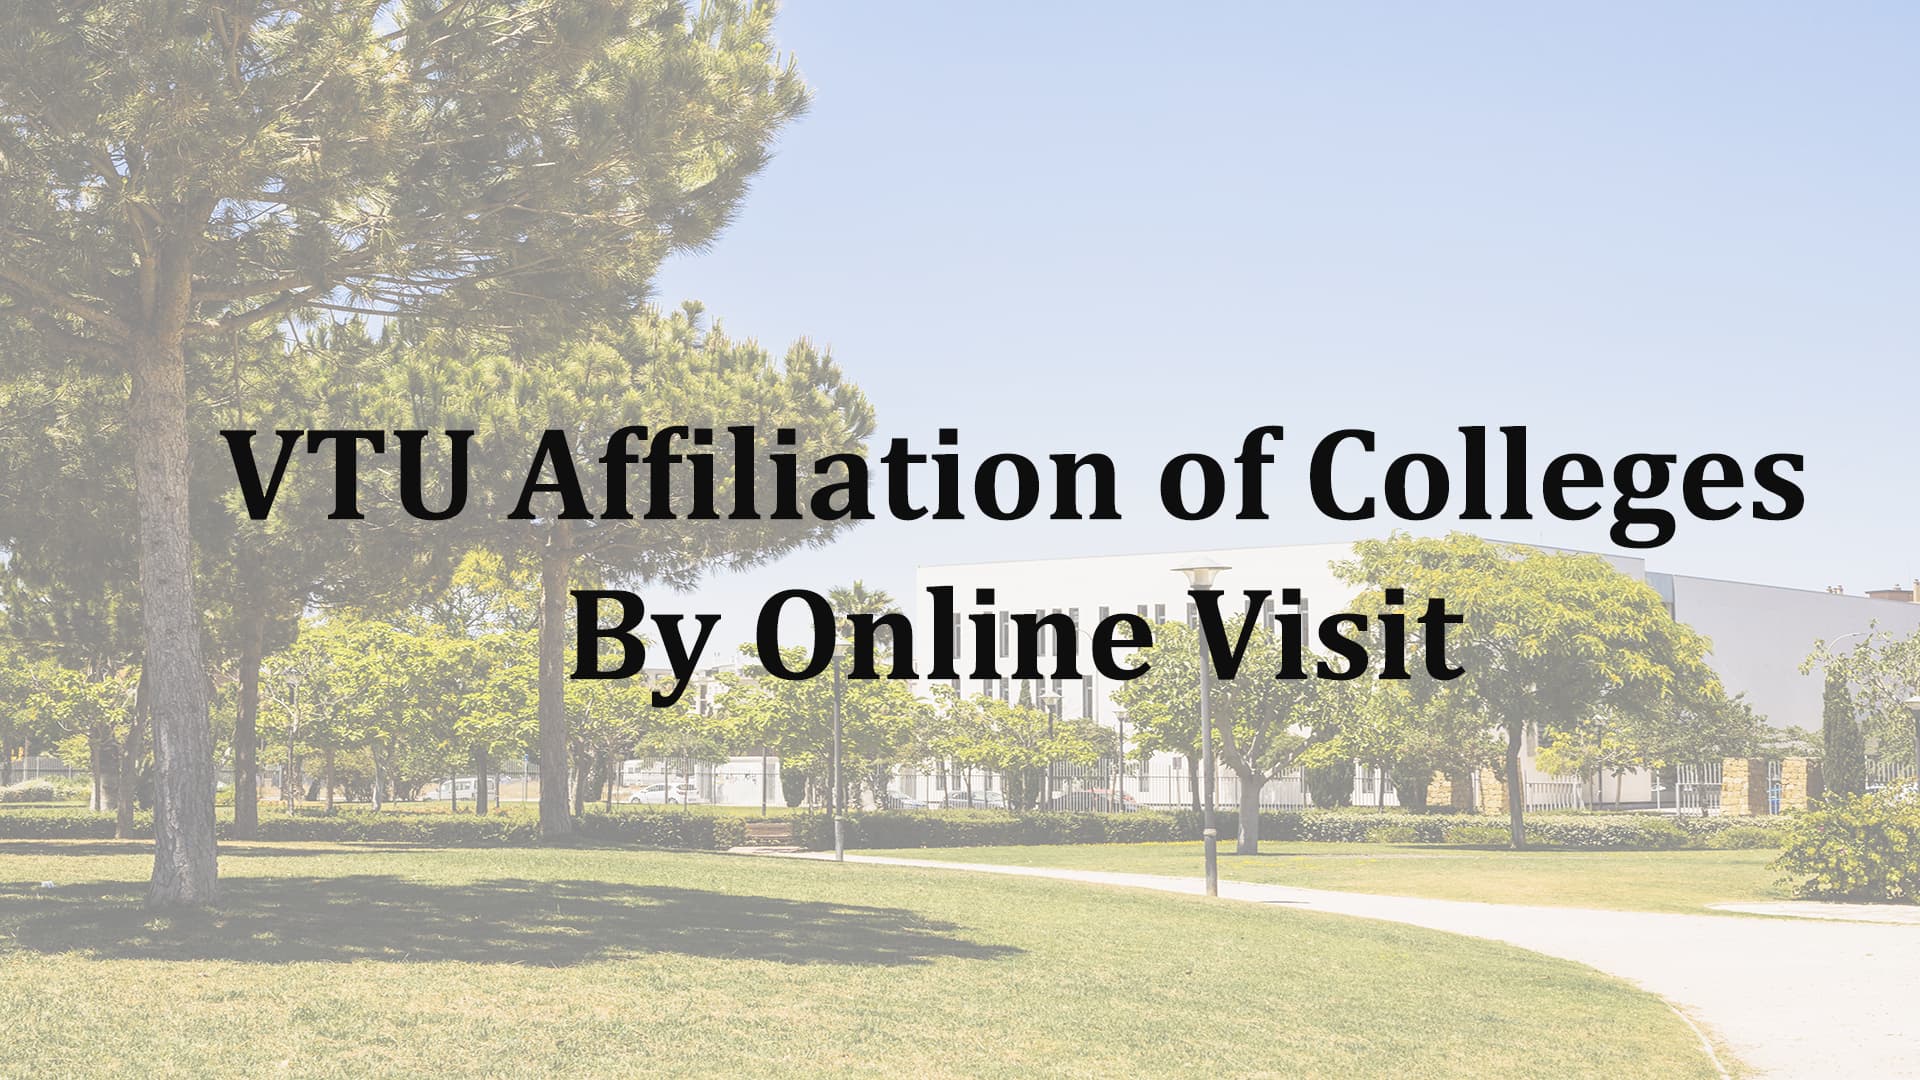 VTU Affiliation of Colleges by Online Visit